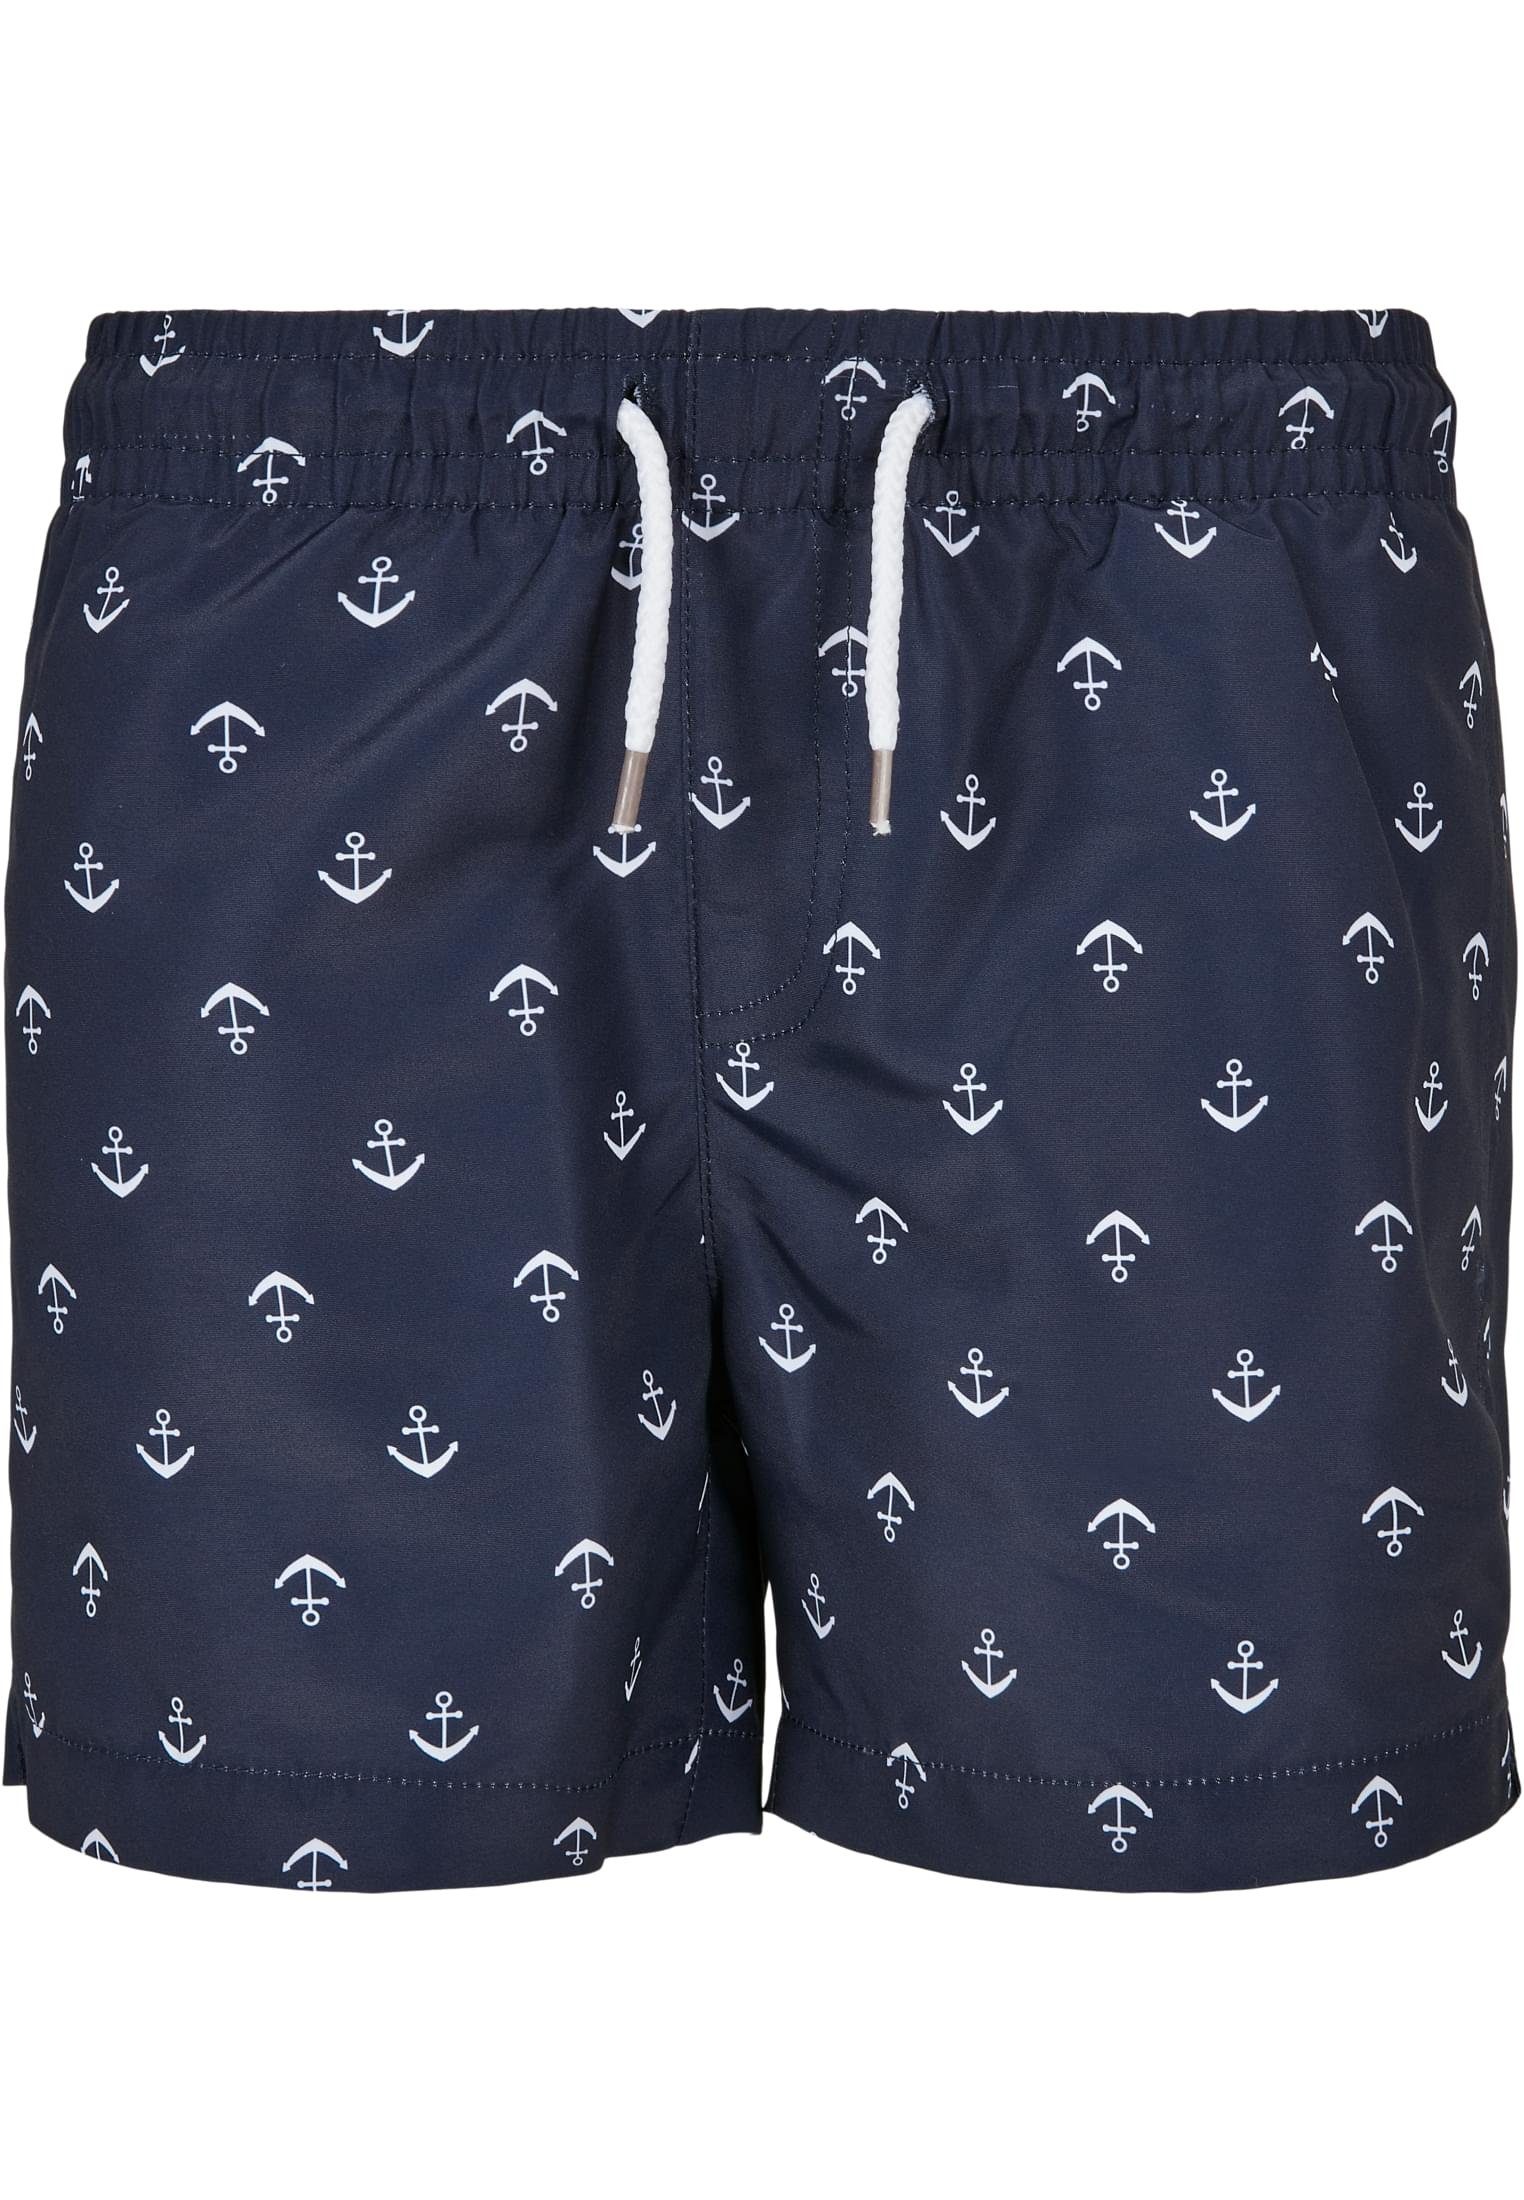 URBAN CLASSICS Badeshorts Herren Boys Pattern Swim Shorts anchor/navy | Badeshorts